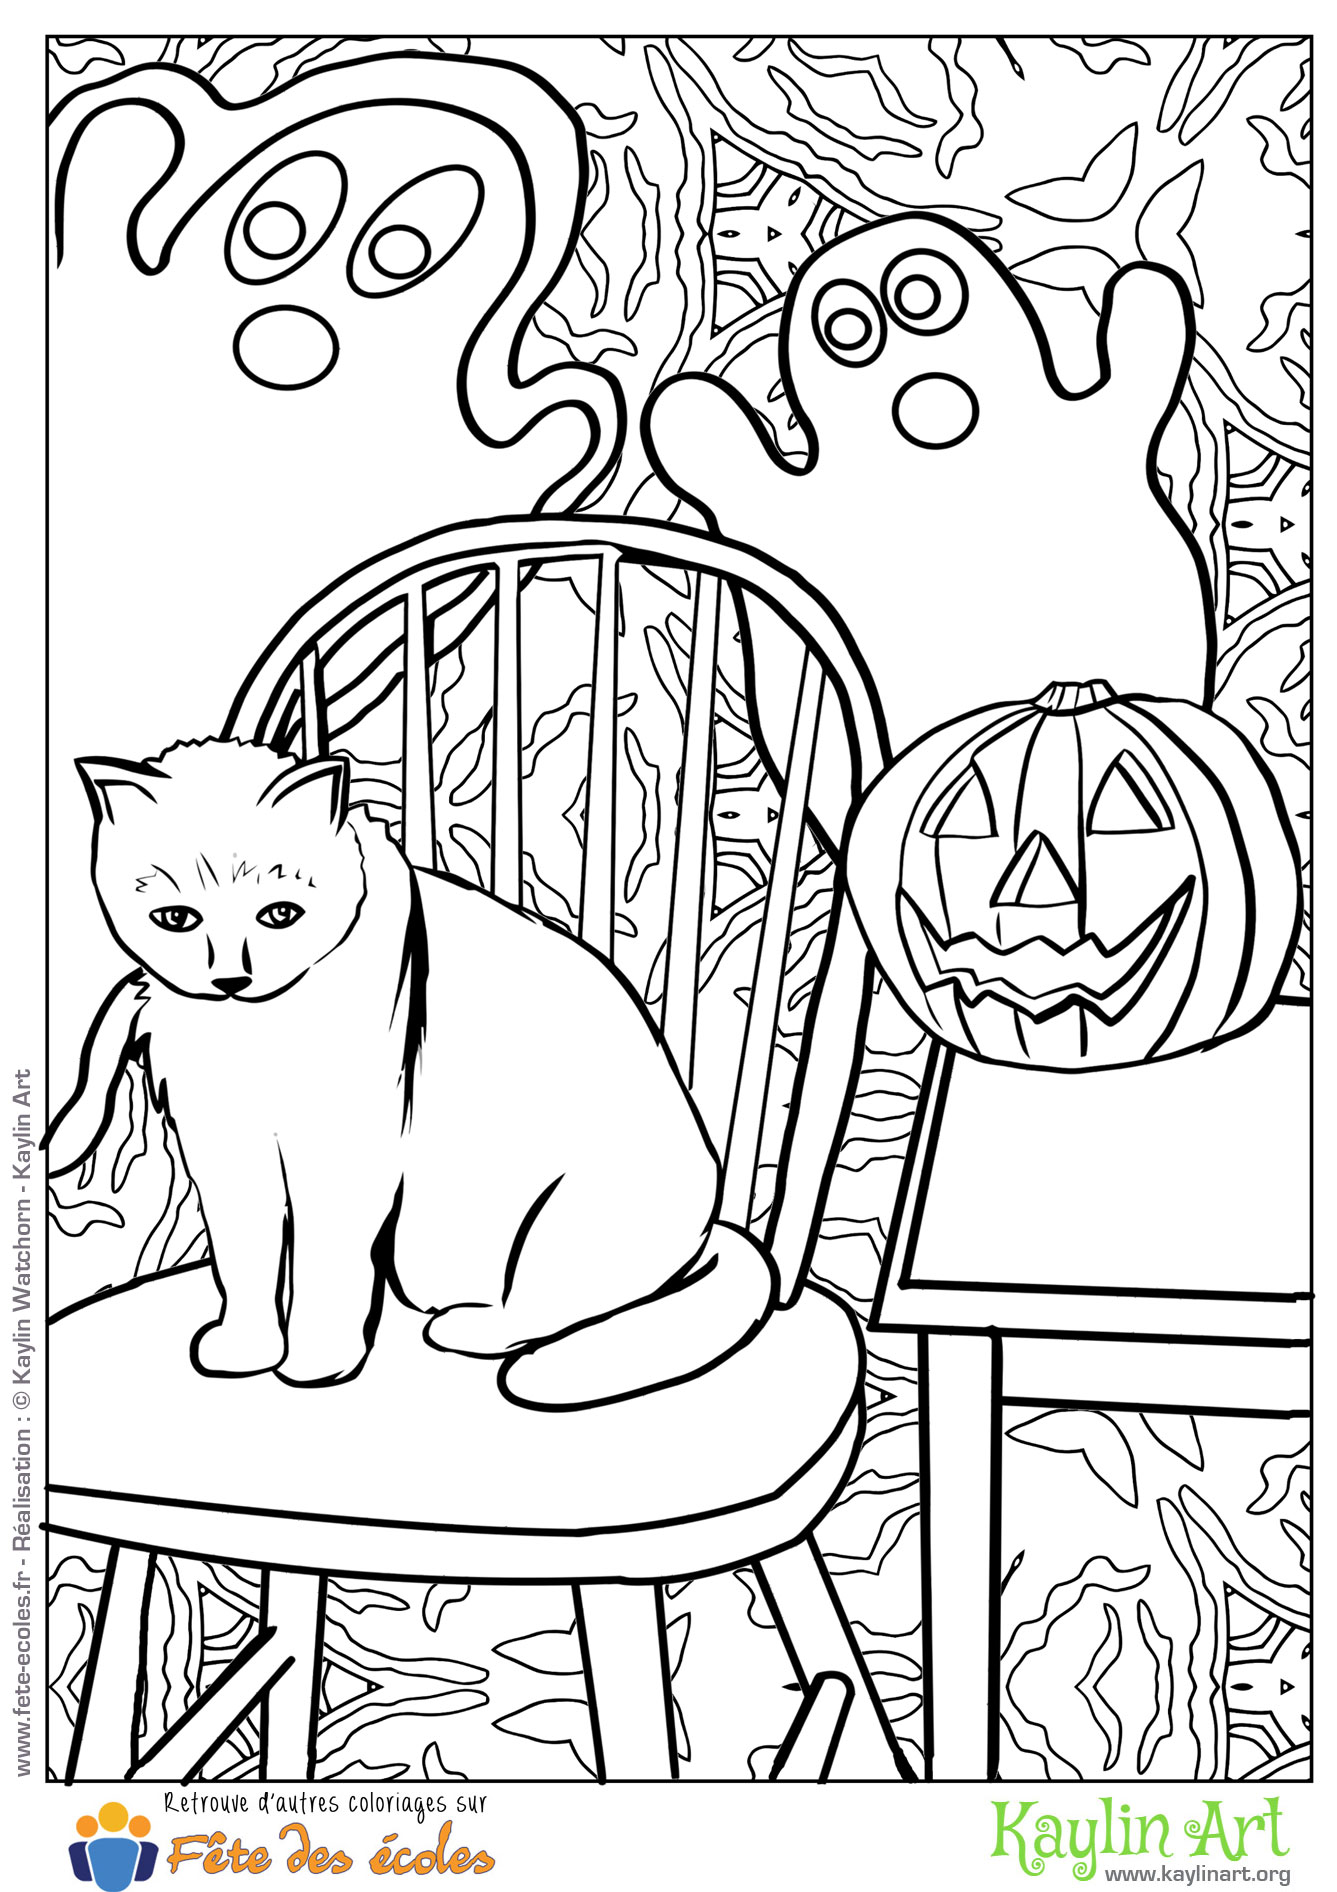 Coloriage d'un chat d'Halloween entouré de fantomes